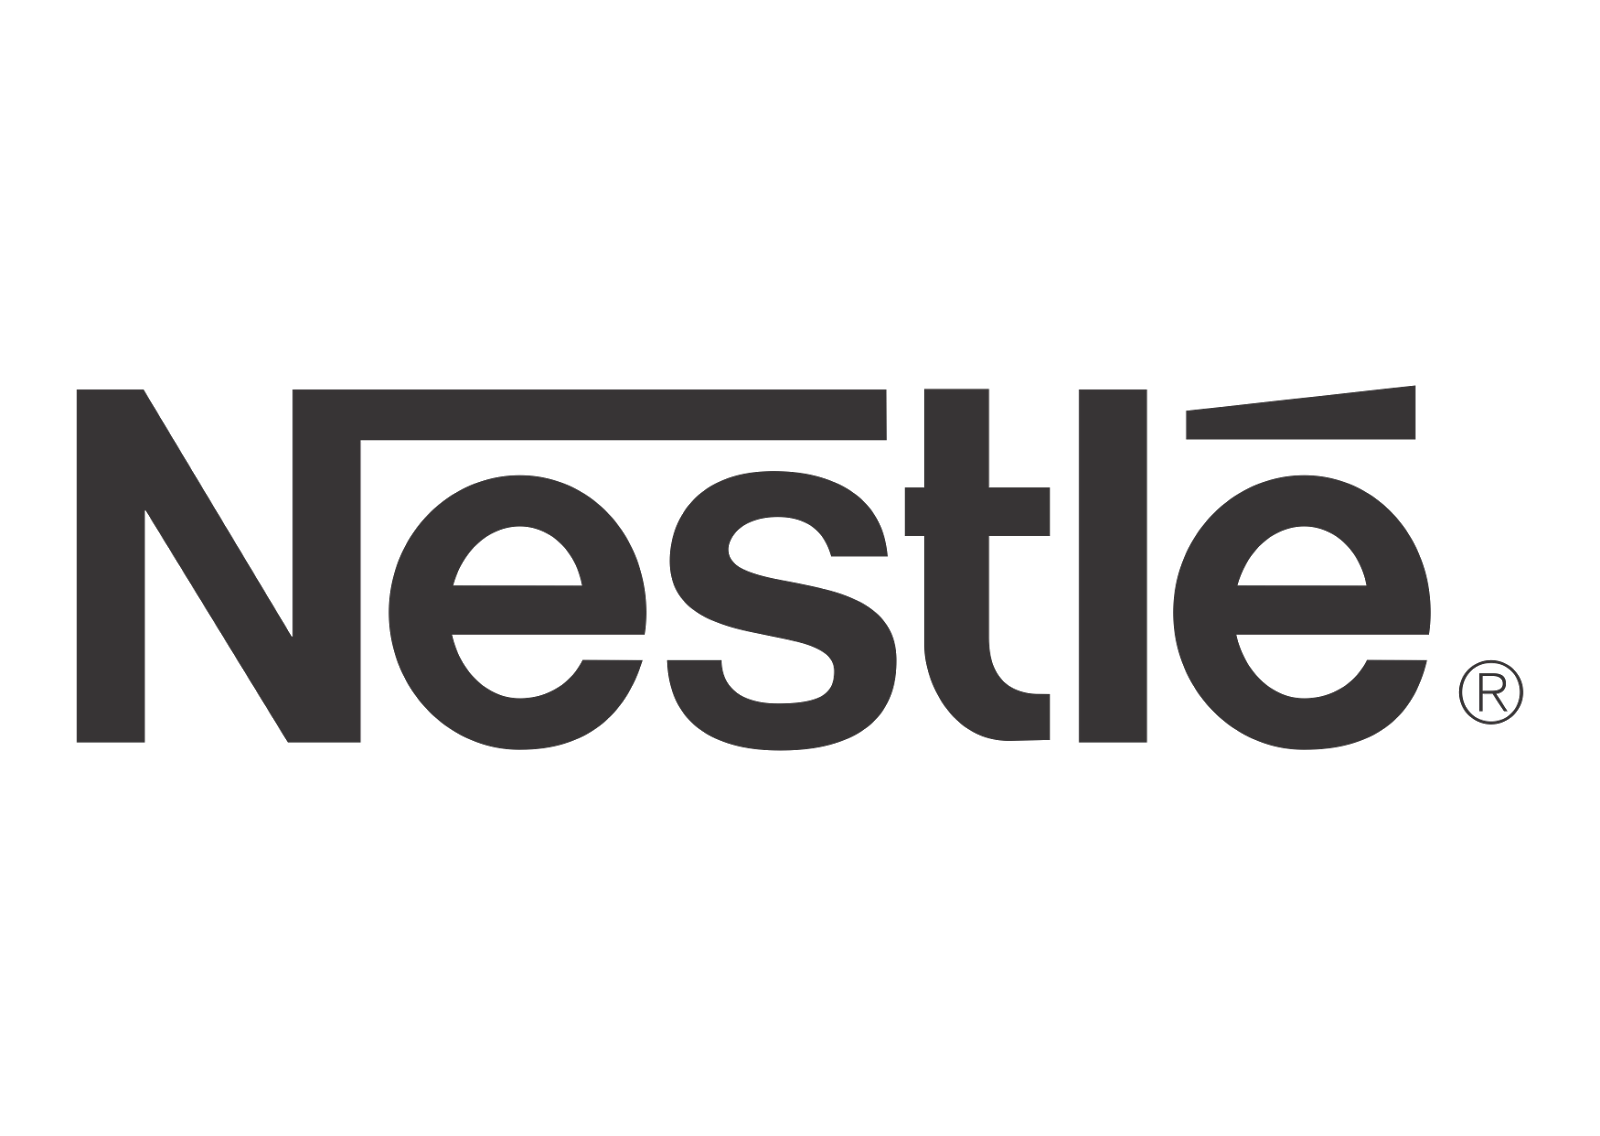 Nestlé logo vector logos in 